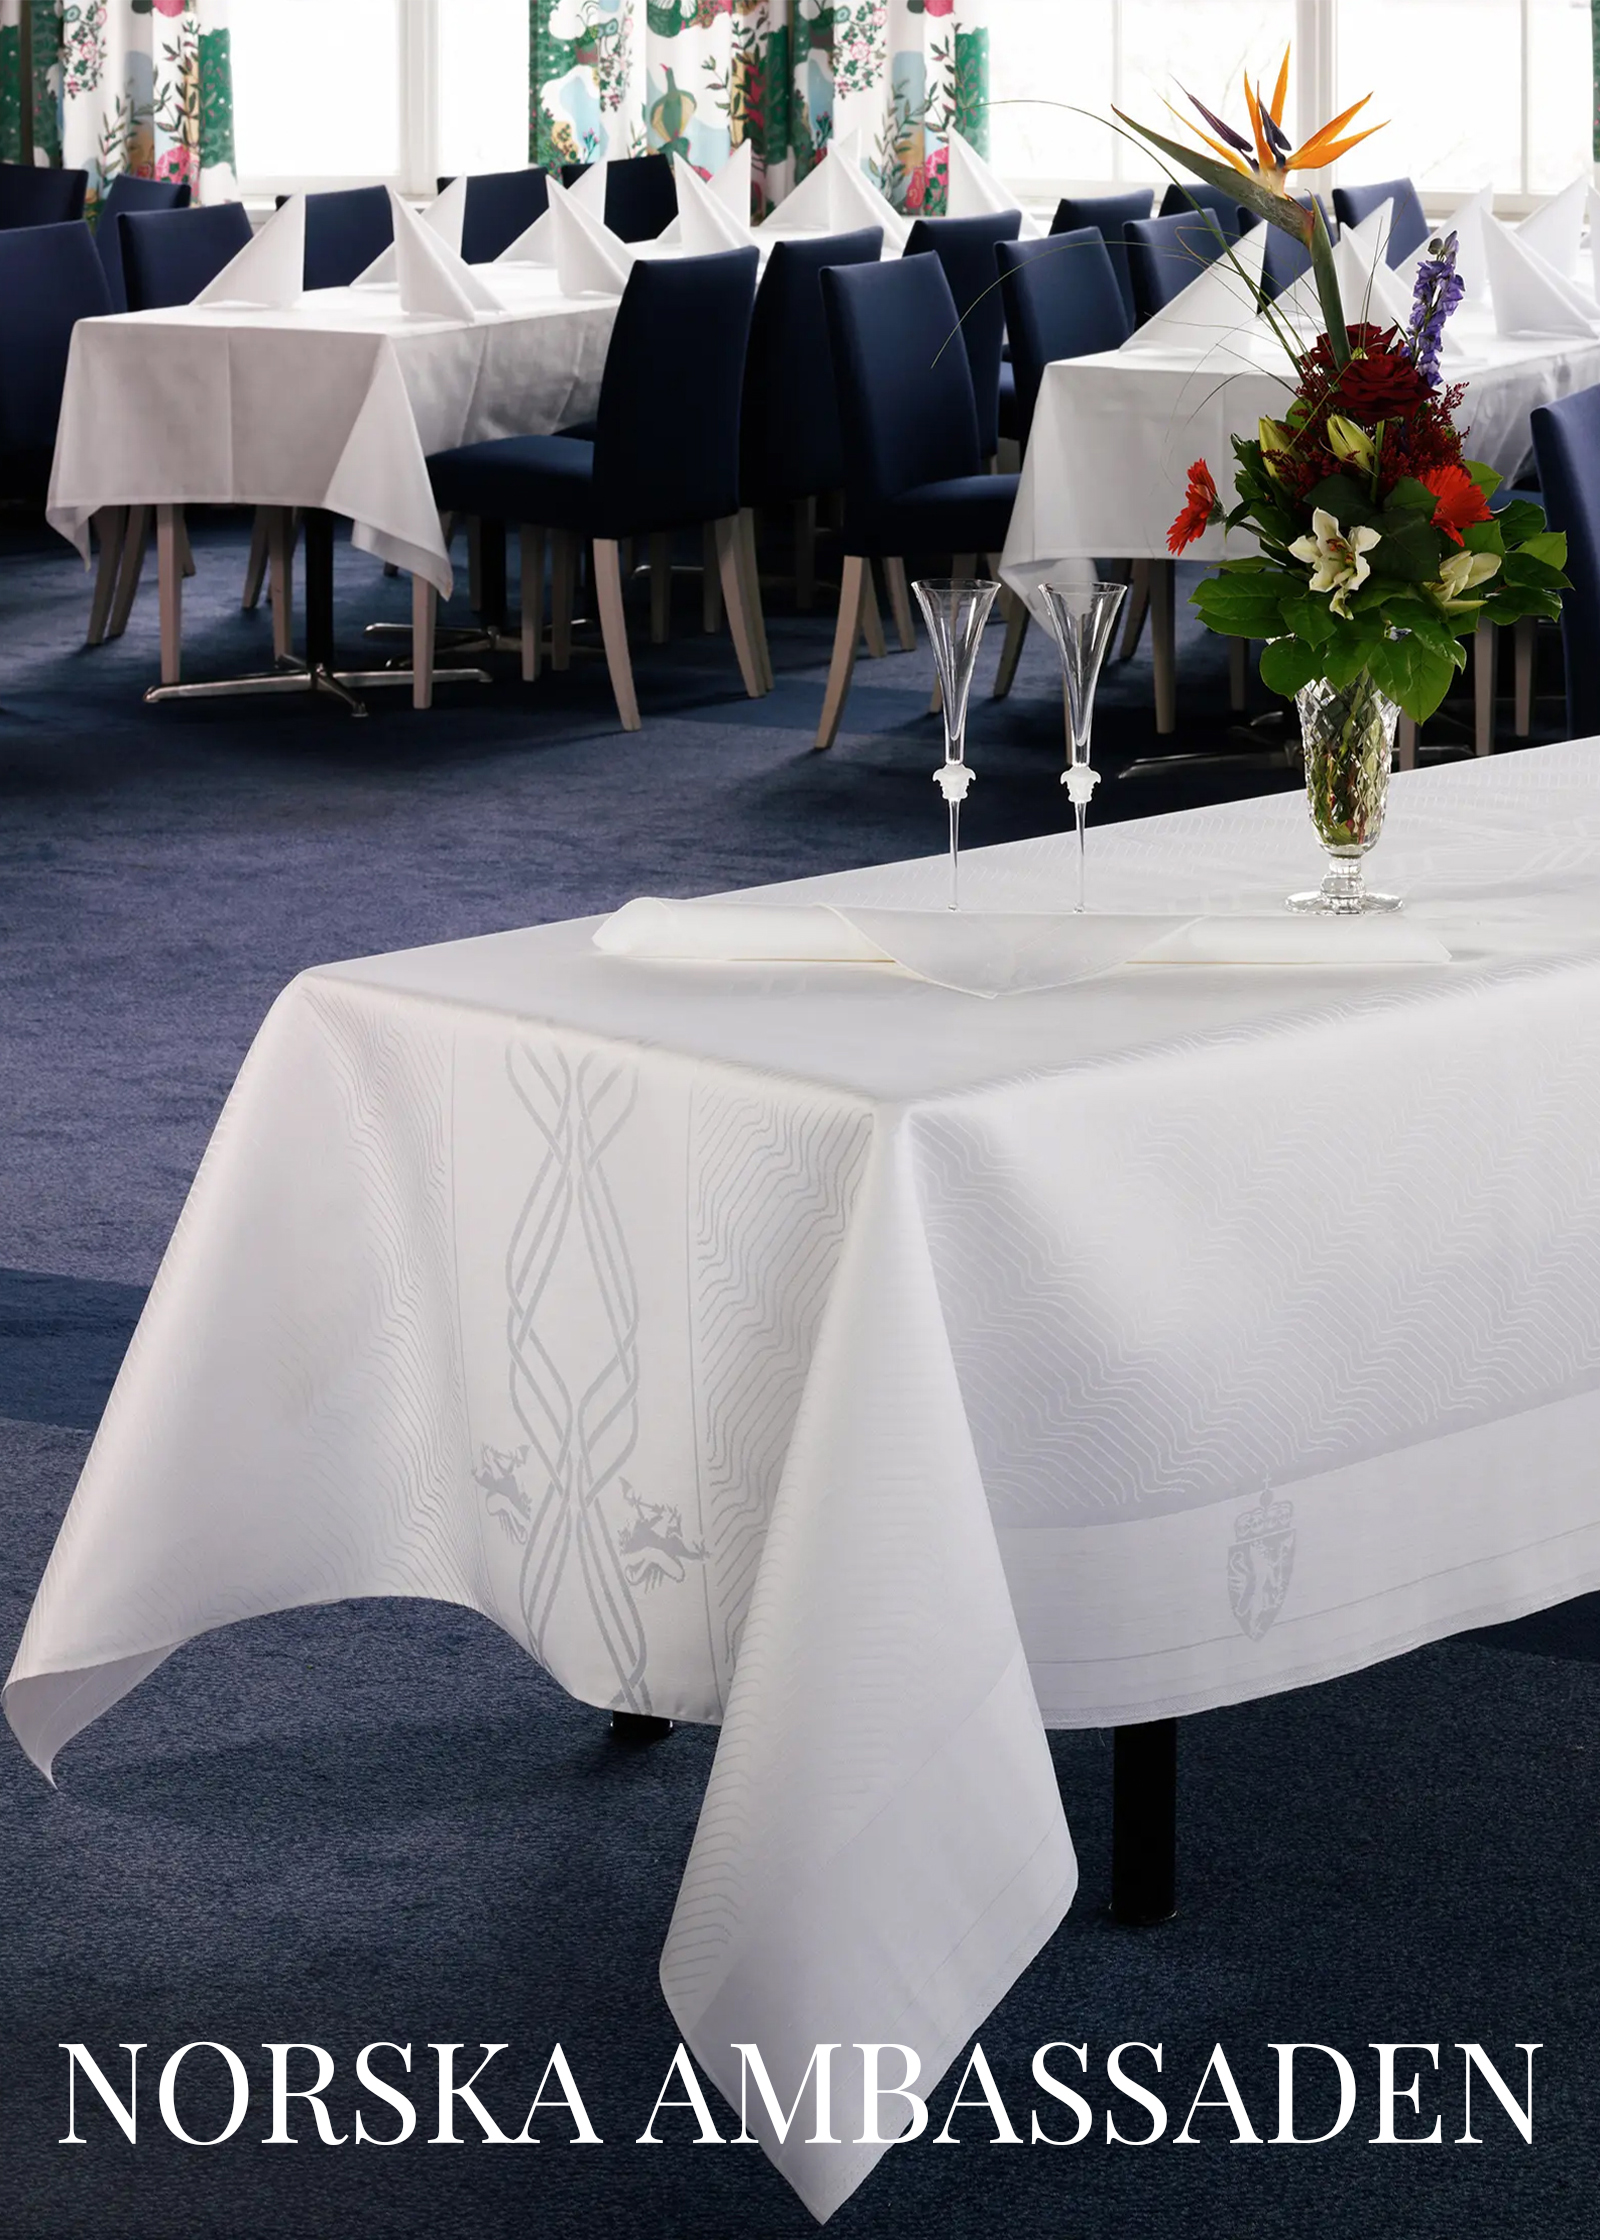 Linen tablecloths for the Norwegian embassy made by Klässbols Linneväveri